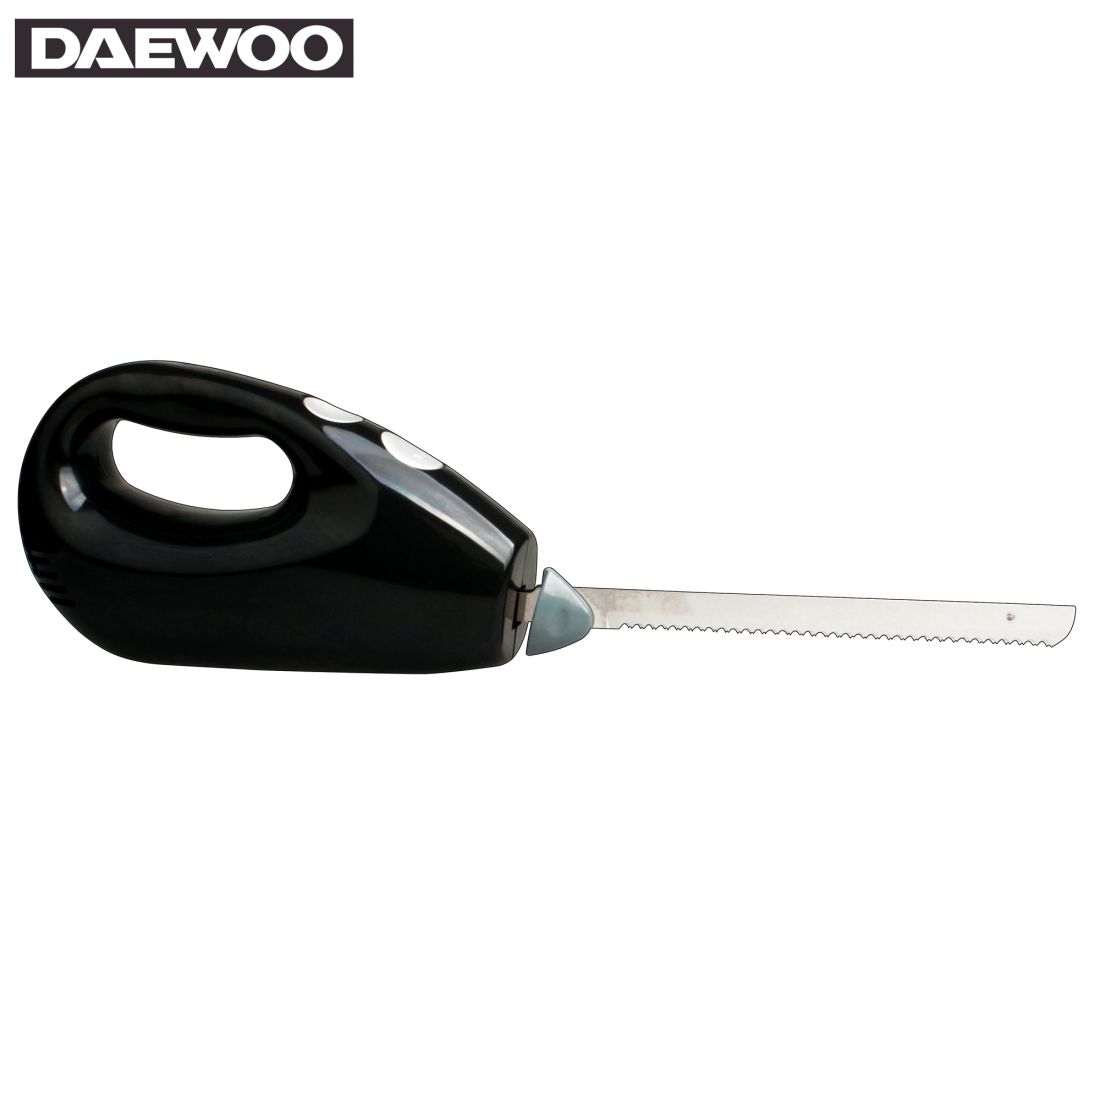 Daewoo SYM-1359: Electric Knife 2